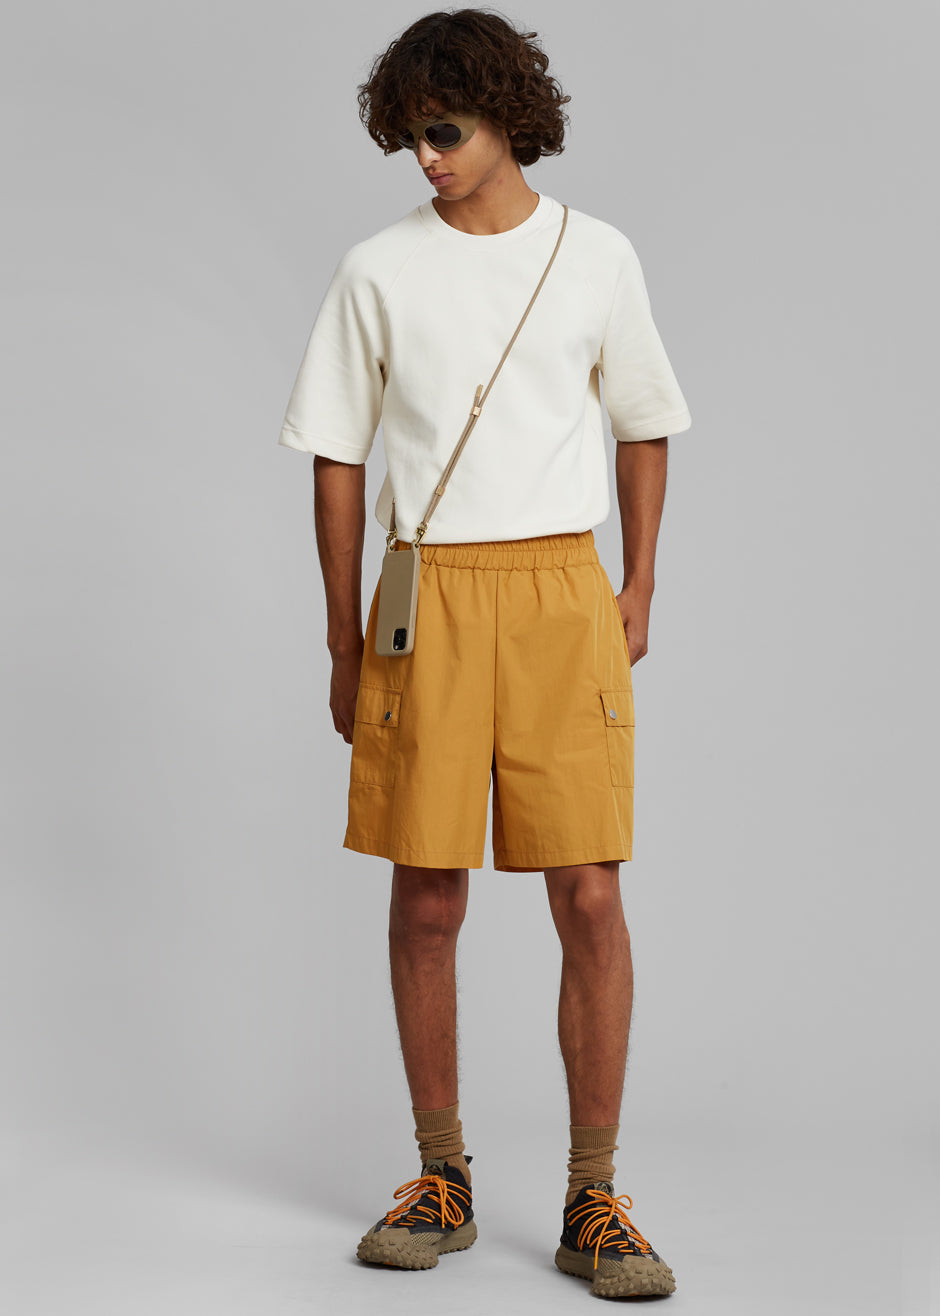 Spence Nylon Shorts - Orange - 2